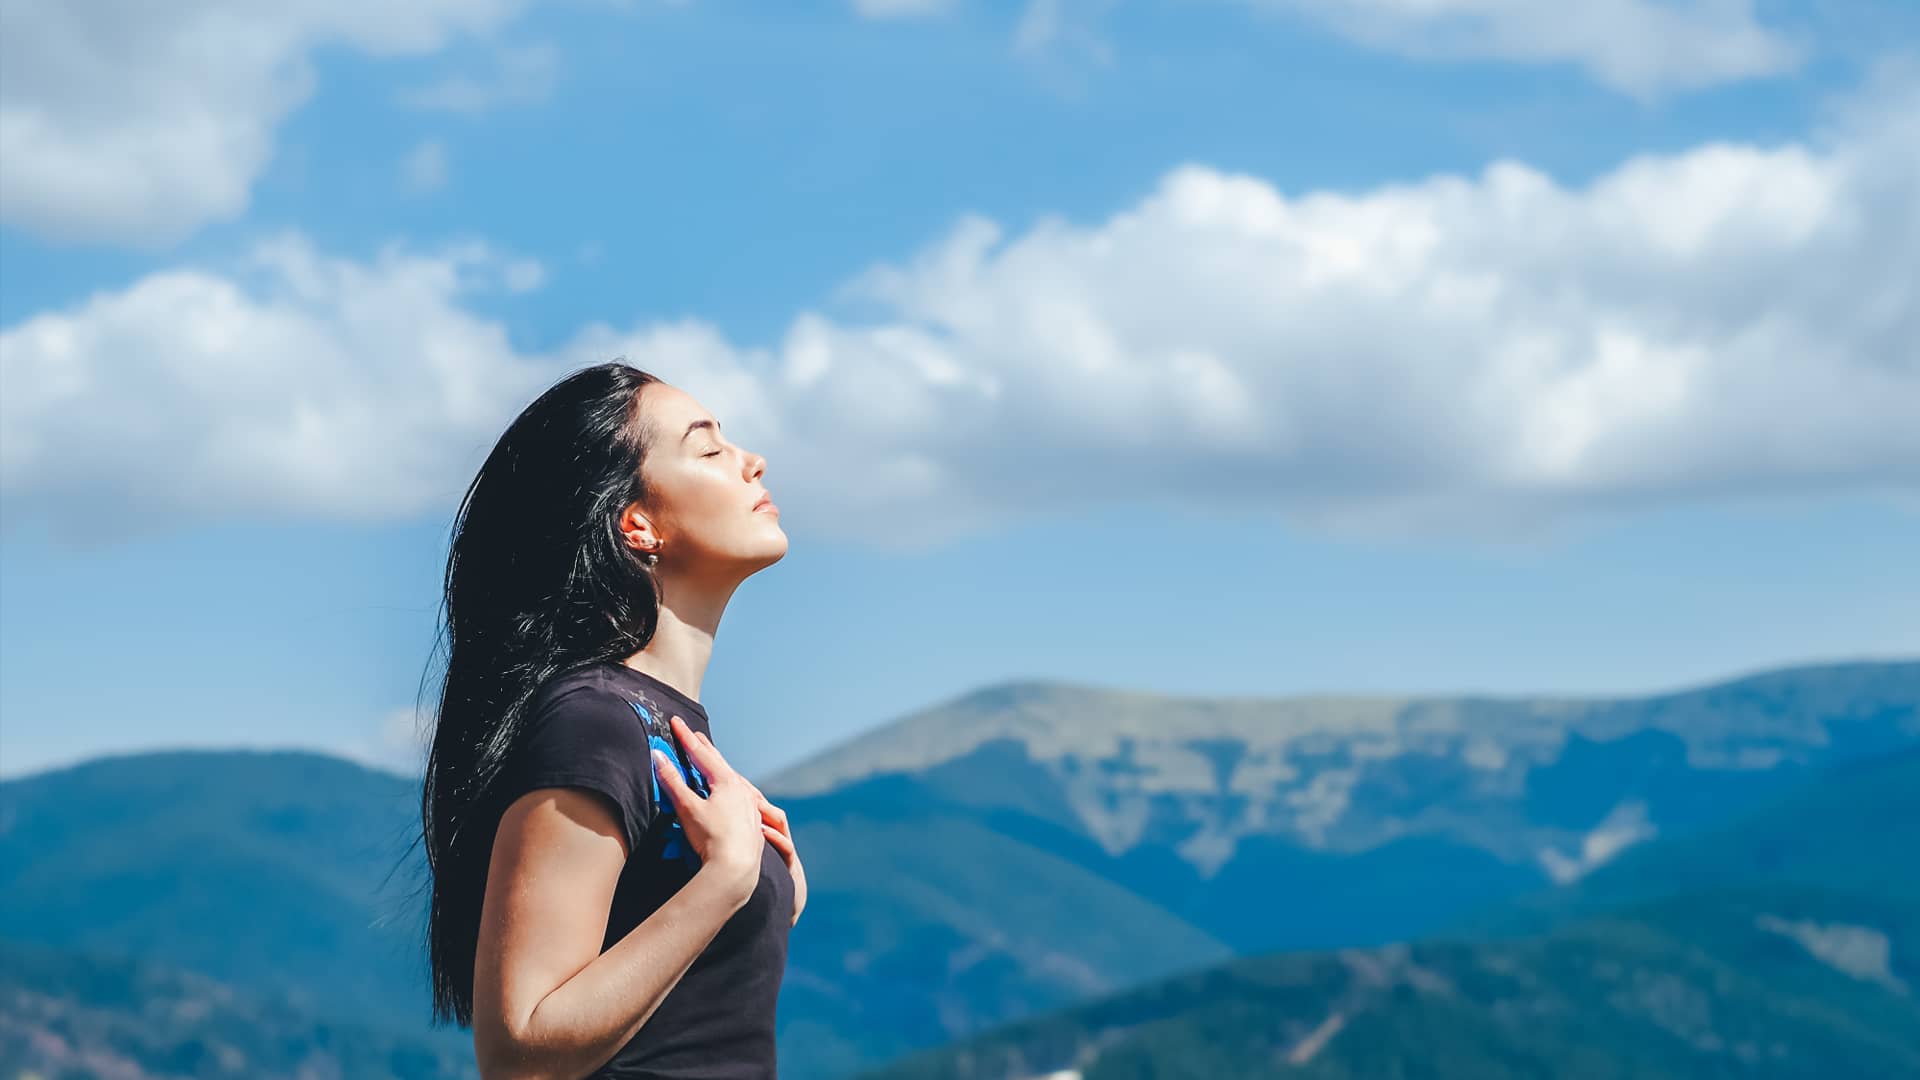 Mujer joven respira profundamente en la cumbre de una montaña representando la paz que aportan las tarifas sin permanencia